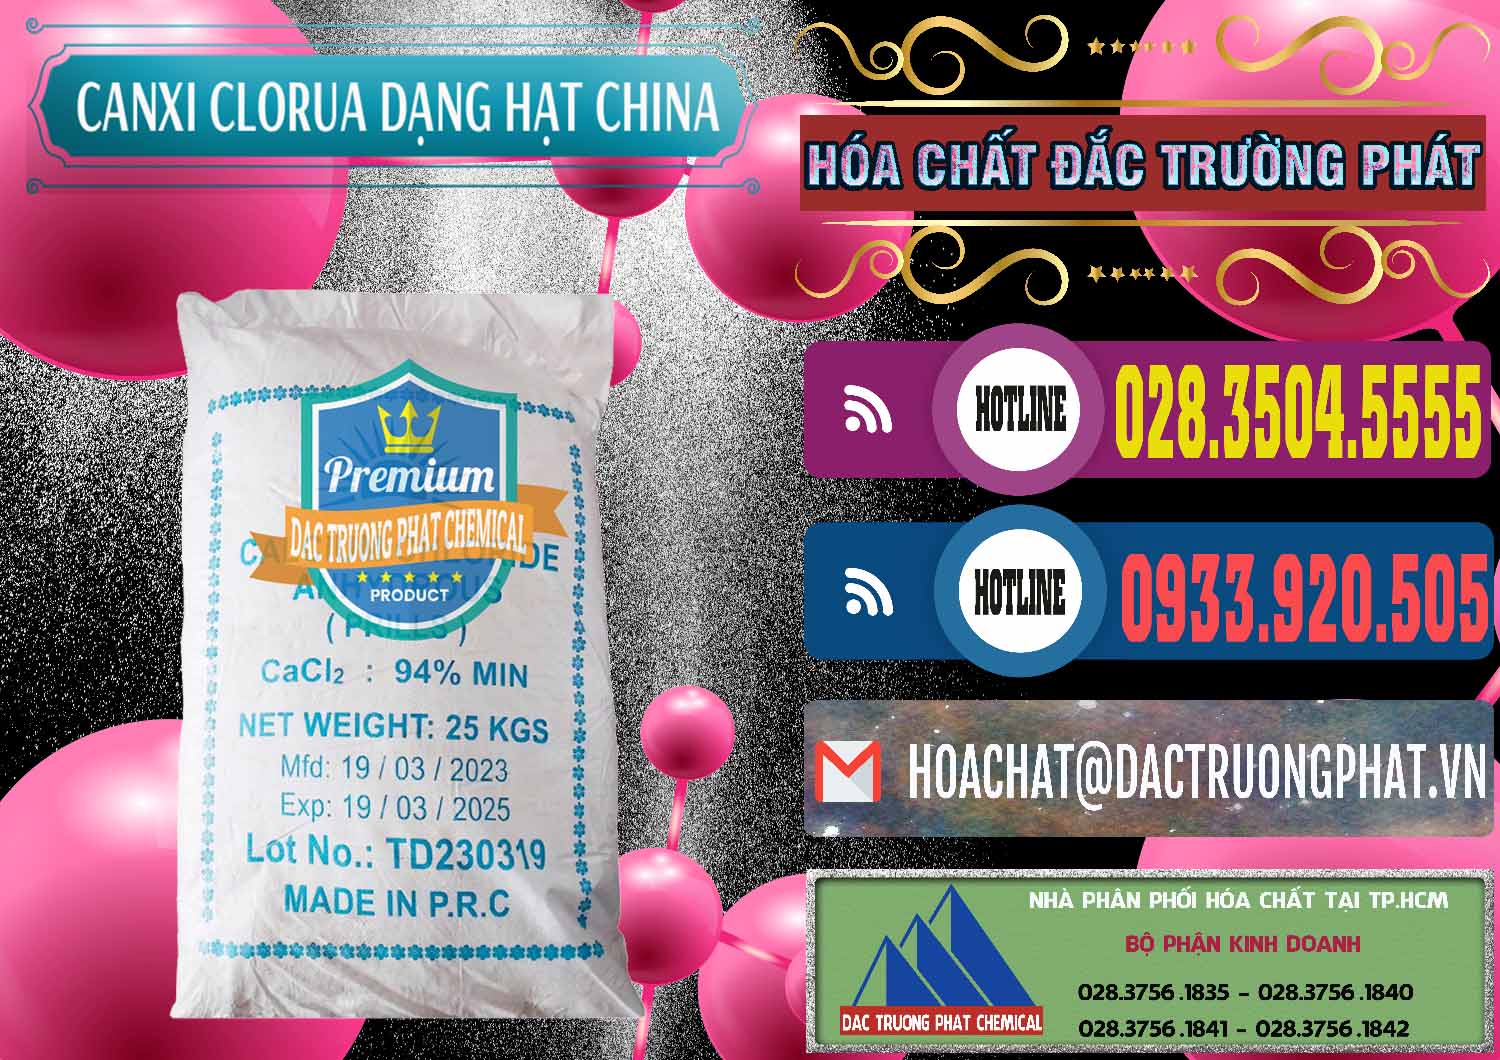 Nơi chuyên kinh doanh - bán CaCl2 – Canxi Clorua 94% Dạng Hạt Trung Quốc China - 0373 - Cty chuyên phân phối _ bán hóa chất tại TP.HCM - muabanhoachat.com.vn